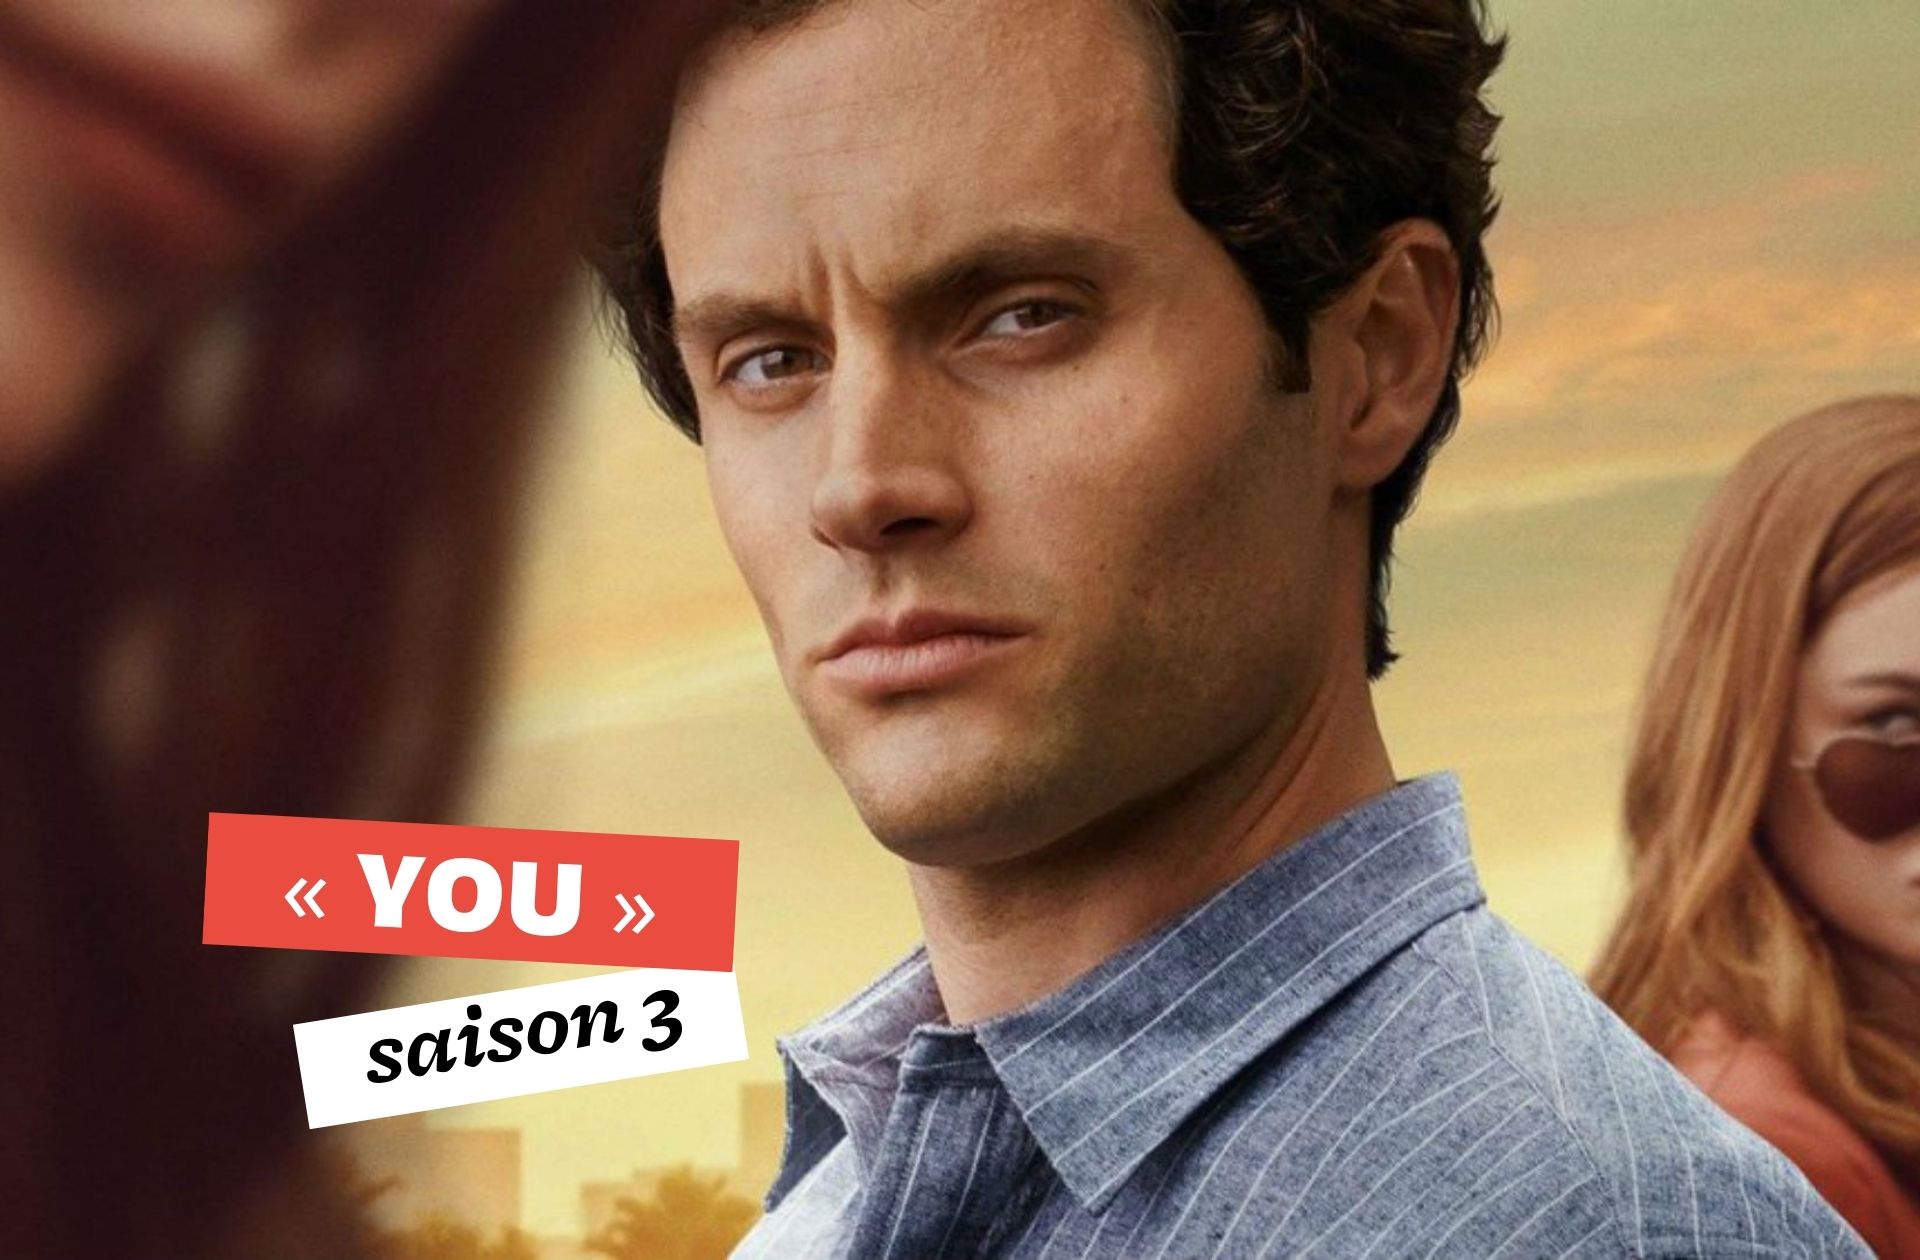 « You » saison 3 a sa date de sortie : Joe revient vite vous hanter sur Netflix